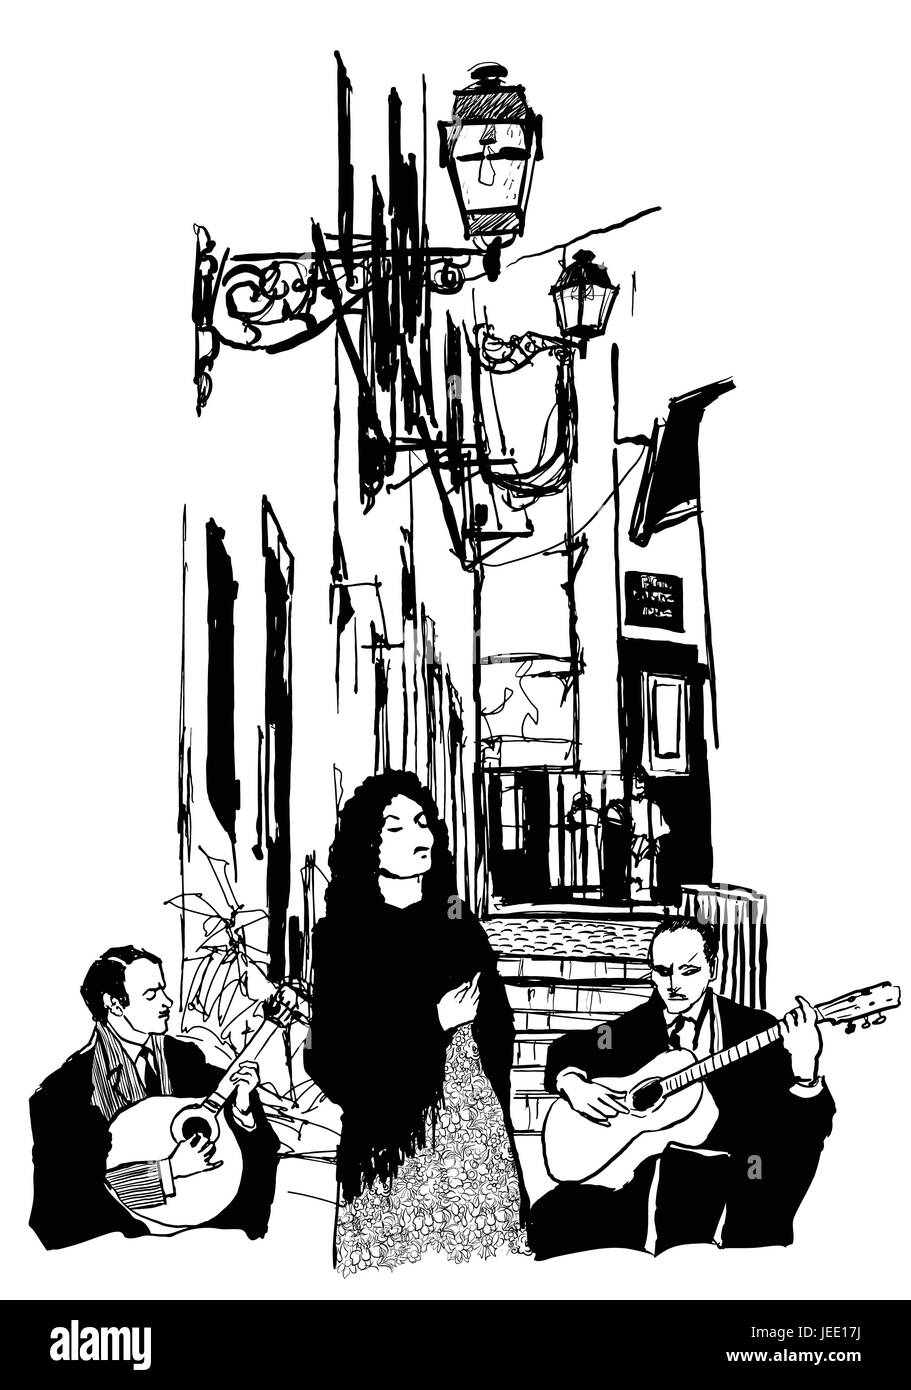 Fado-Sänger und Gitarristen in Alfama Lissabon - Vektor-illustration Stock Vektor